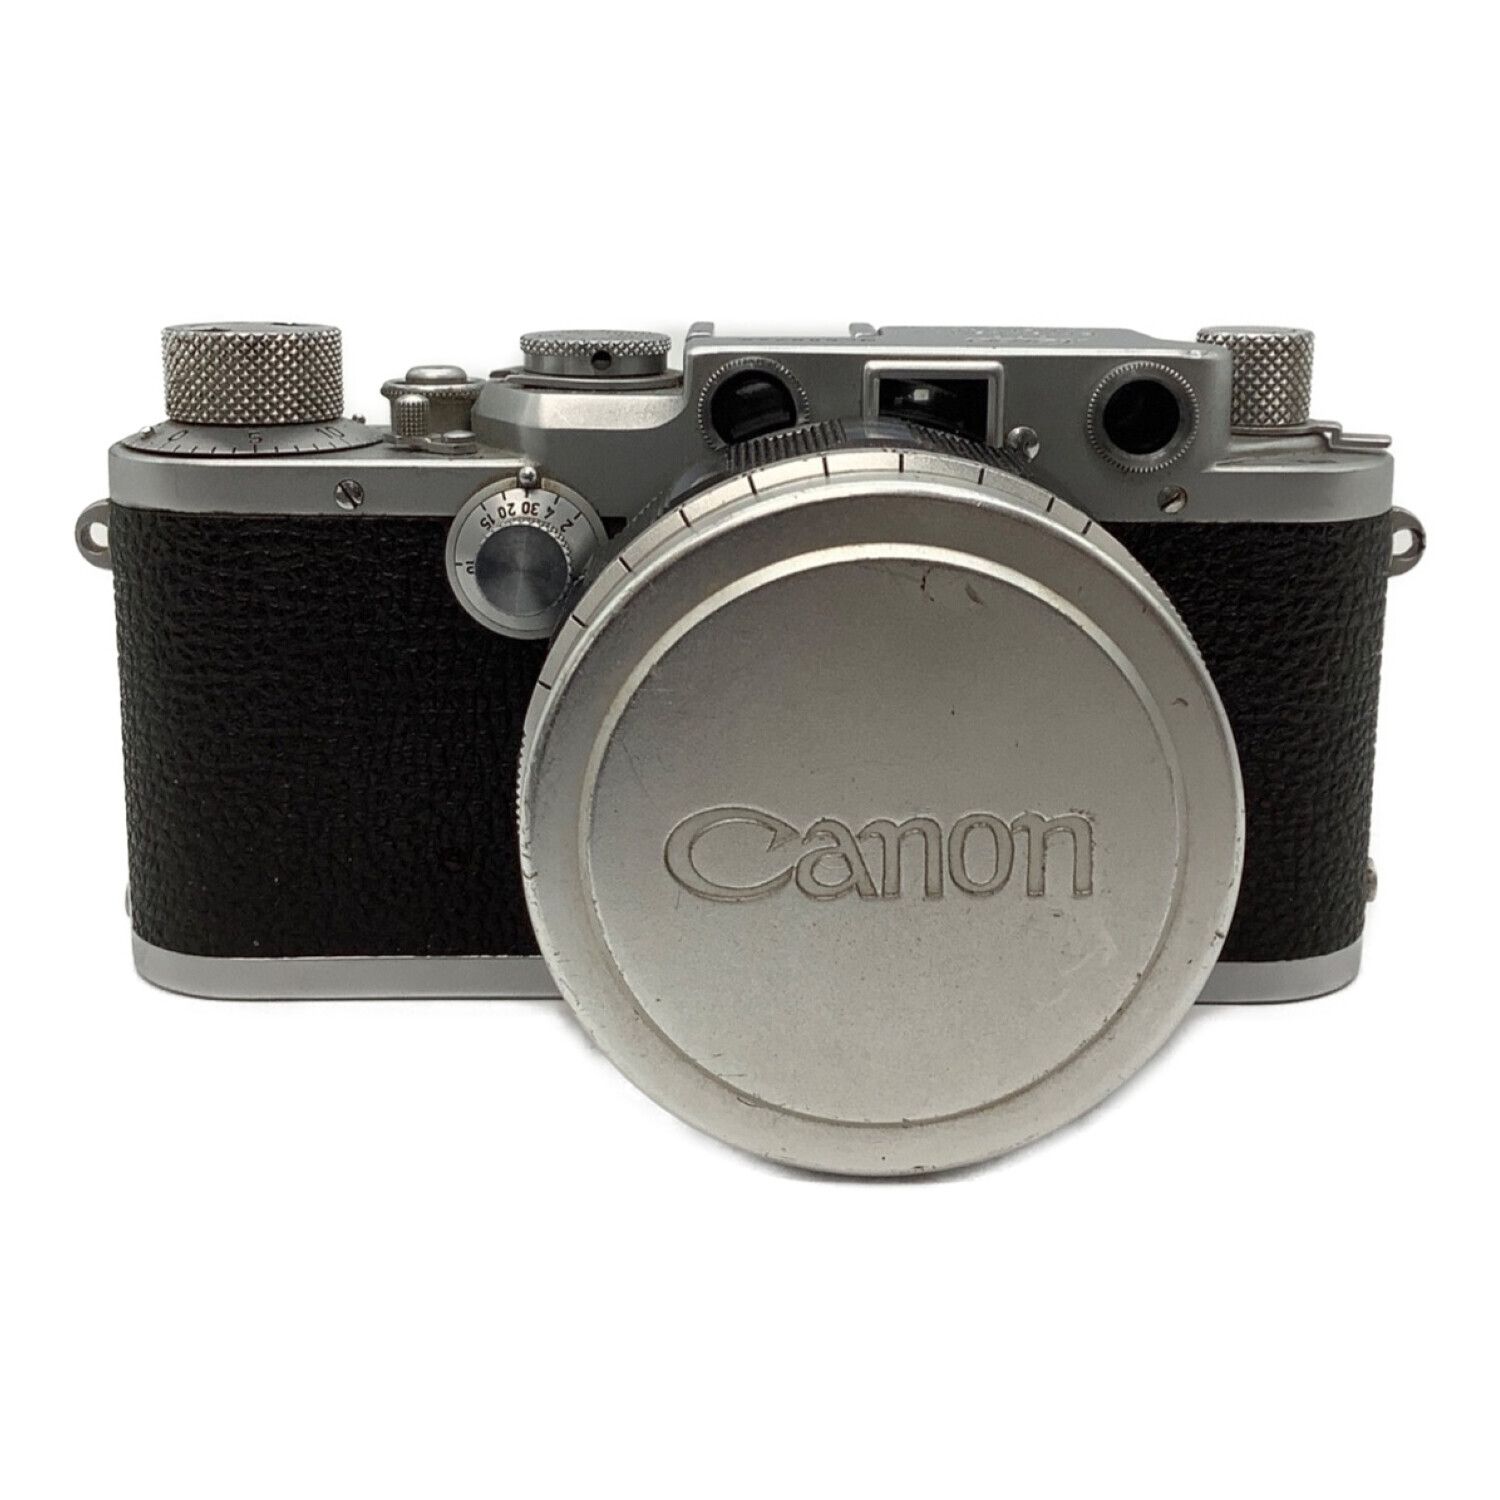 Leica (ライカ) バルナックライカ IIIc 1940年代 レンズ:CANON 50mm F1